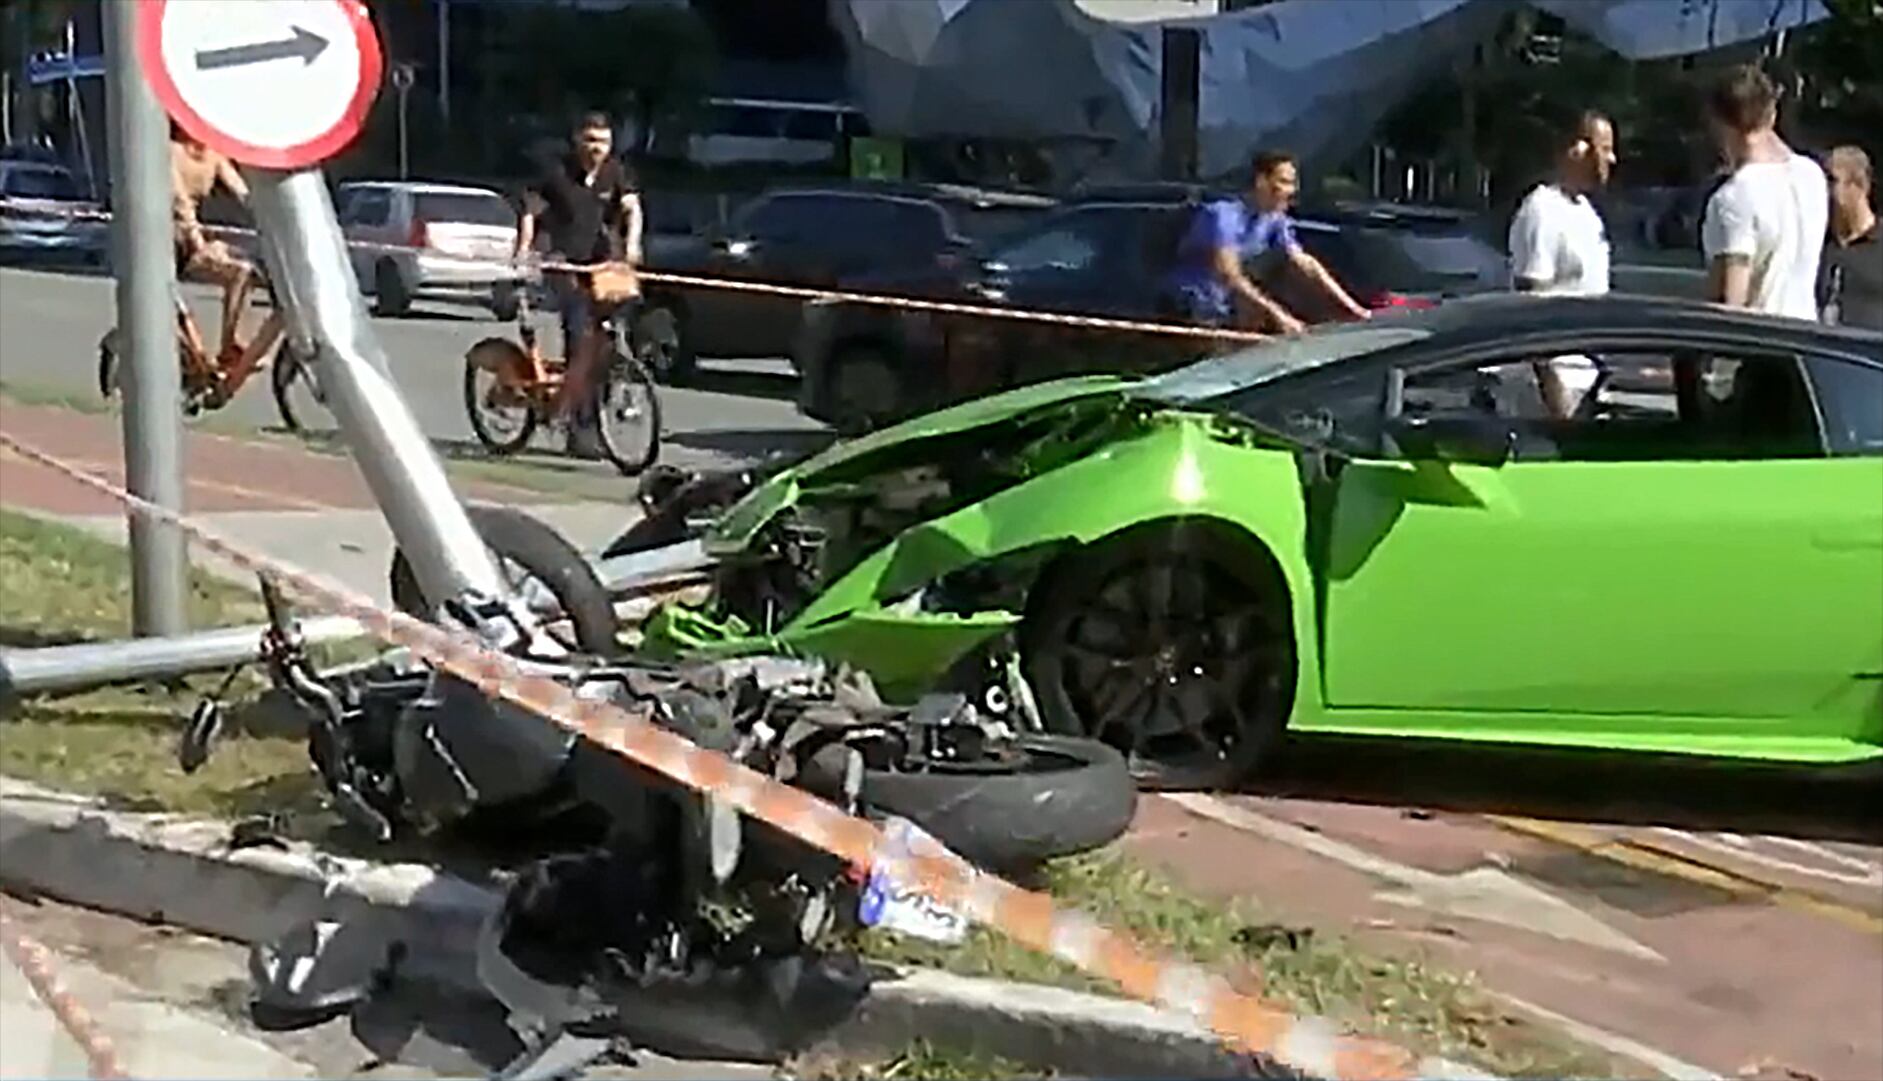 Frente do Lamborghini e a moto do suspeito do assalto ficaram destruídas